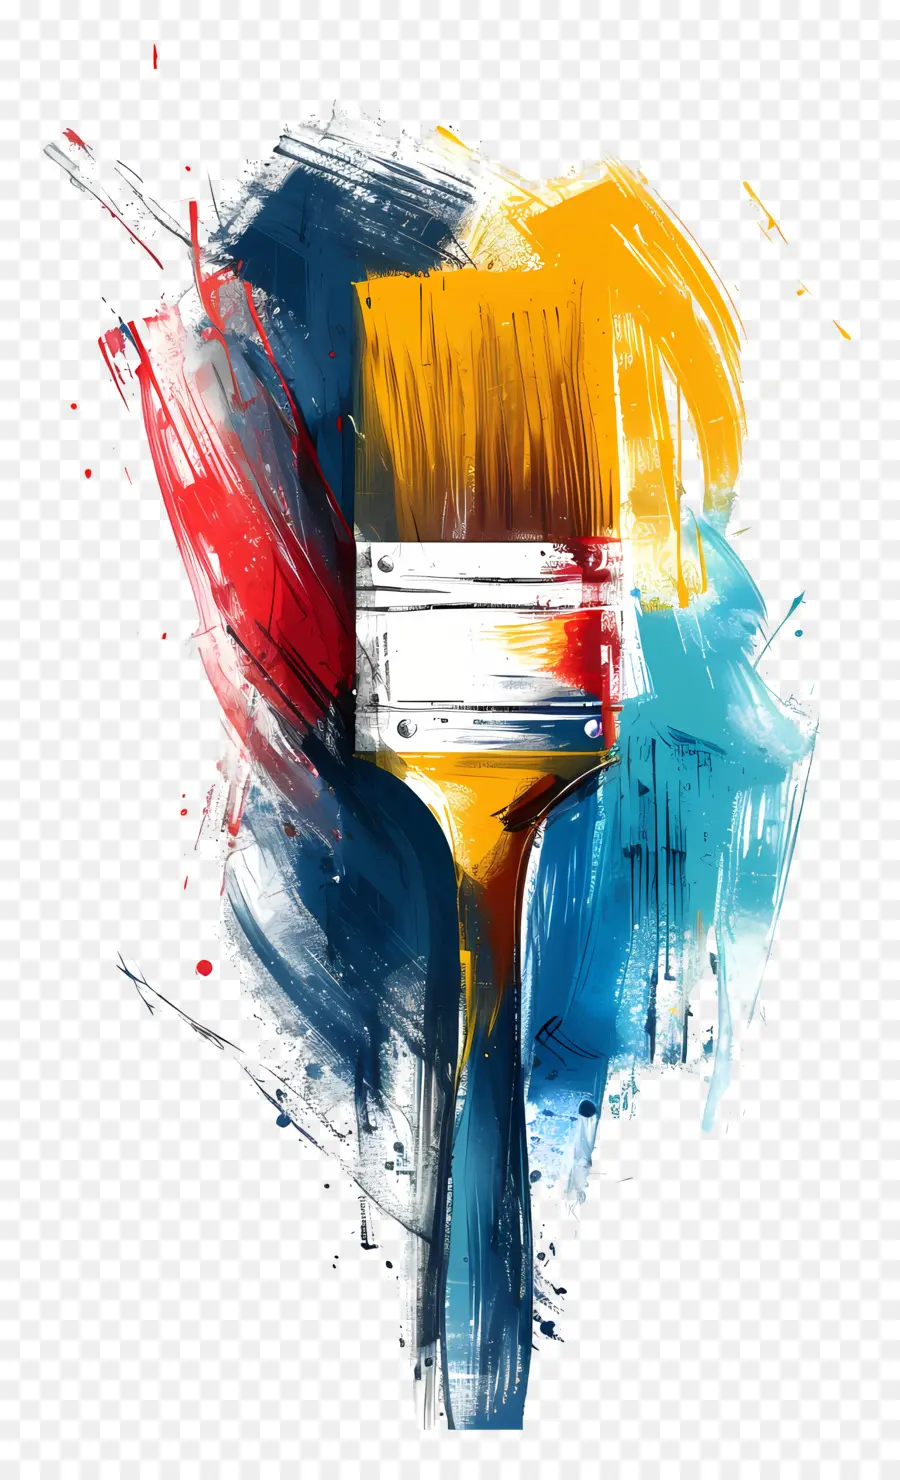 pennello - Paintbrush colorato su sfondo nero con le parole